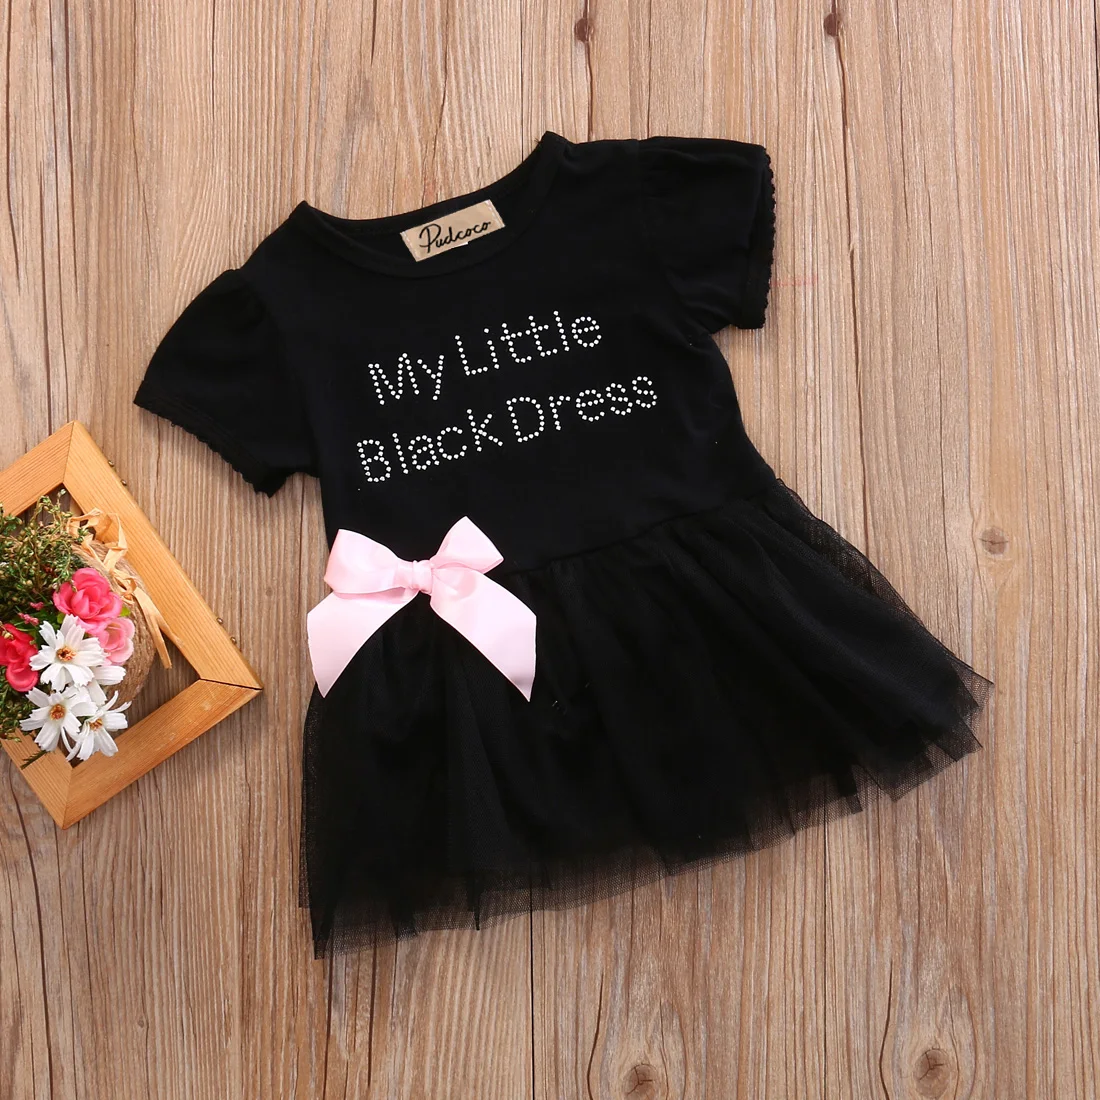 Хи-хи, детское платье-пачка черного цвета с короткими рукавами и буквенным принтом для новорожденных девочек от 0 до 24 месяцев